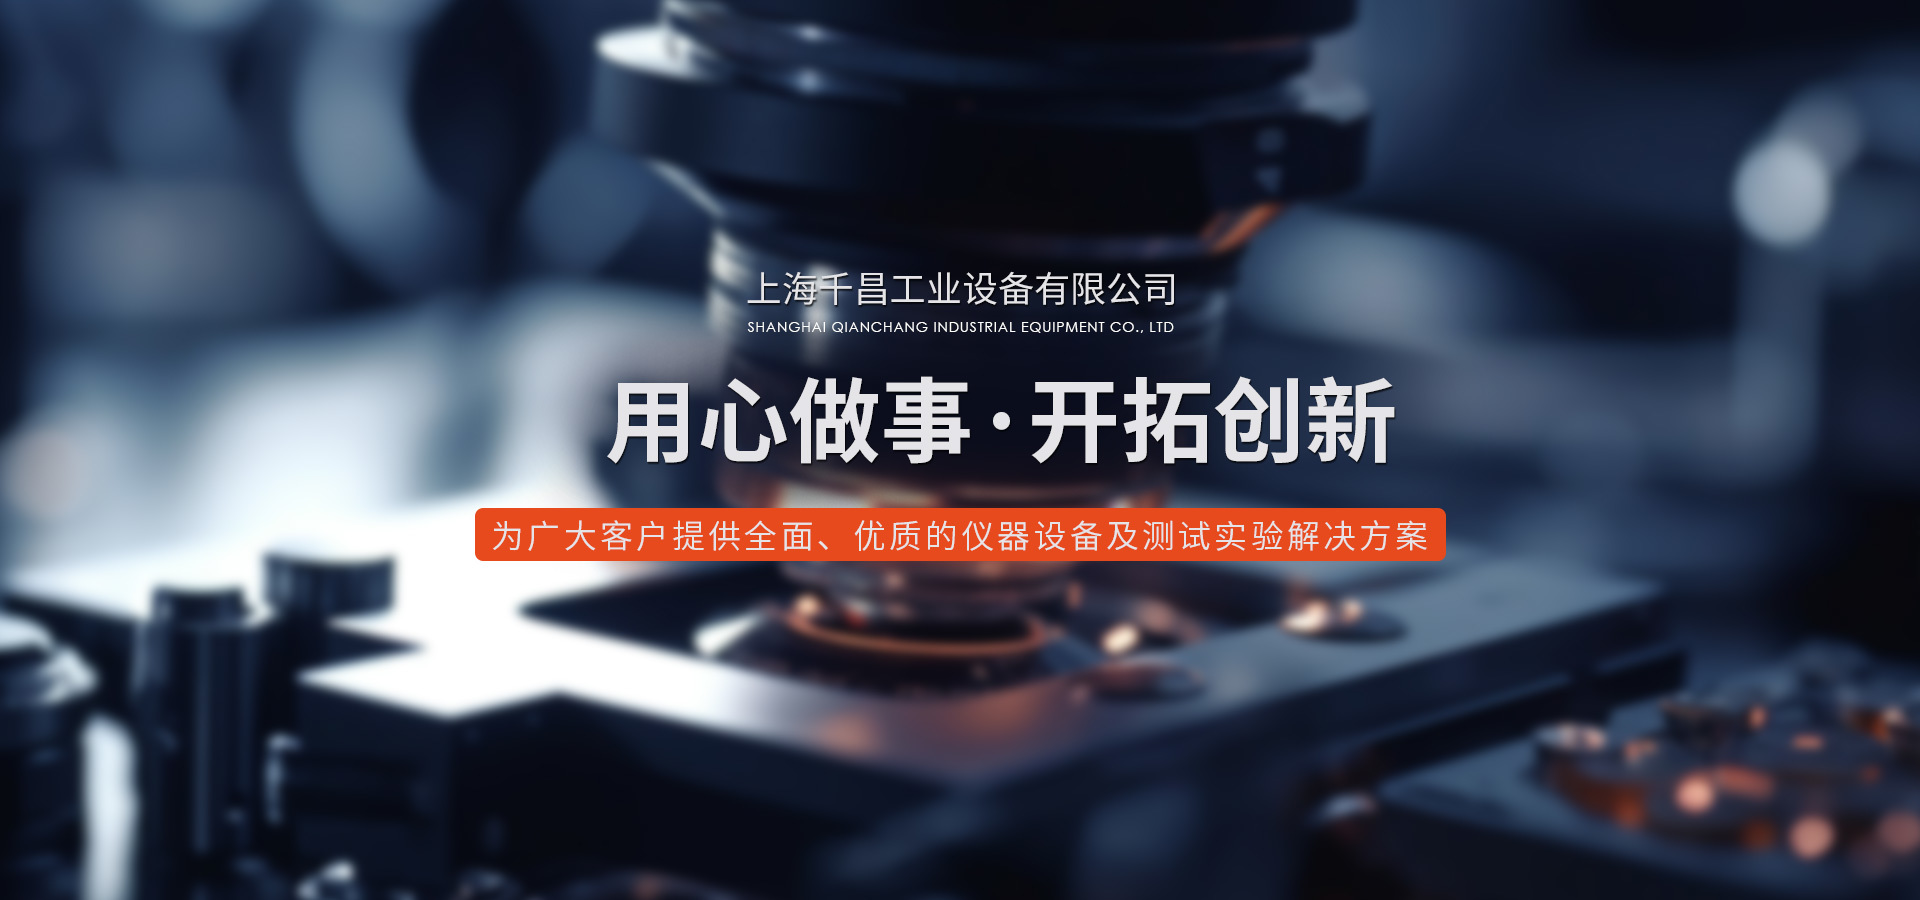 追踪式3D扫描仪、上海三丰高度计量具、工业3D扫描仪、三丰高度计量具、上海便携式粗糙度仪